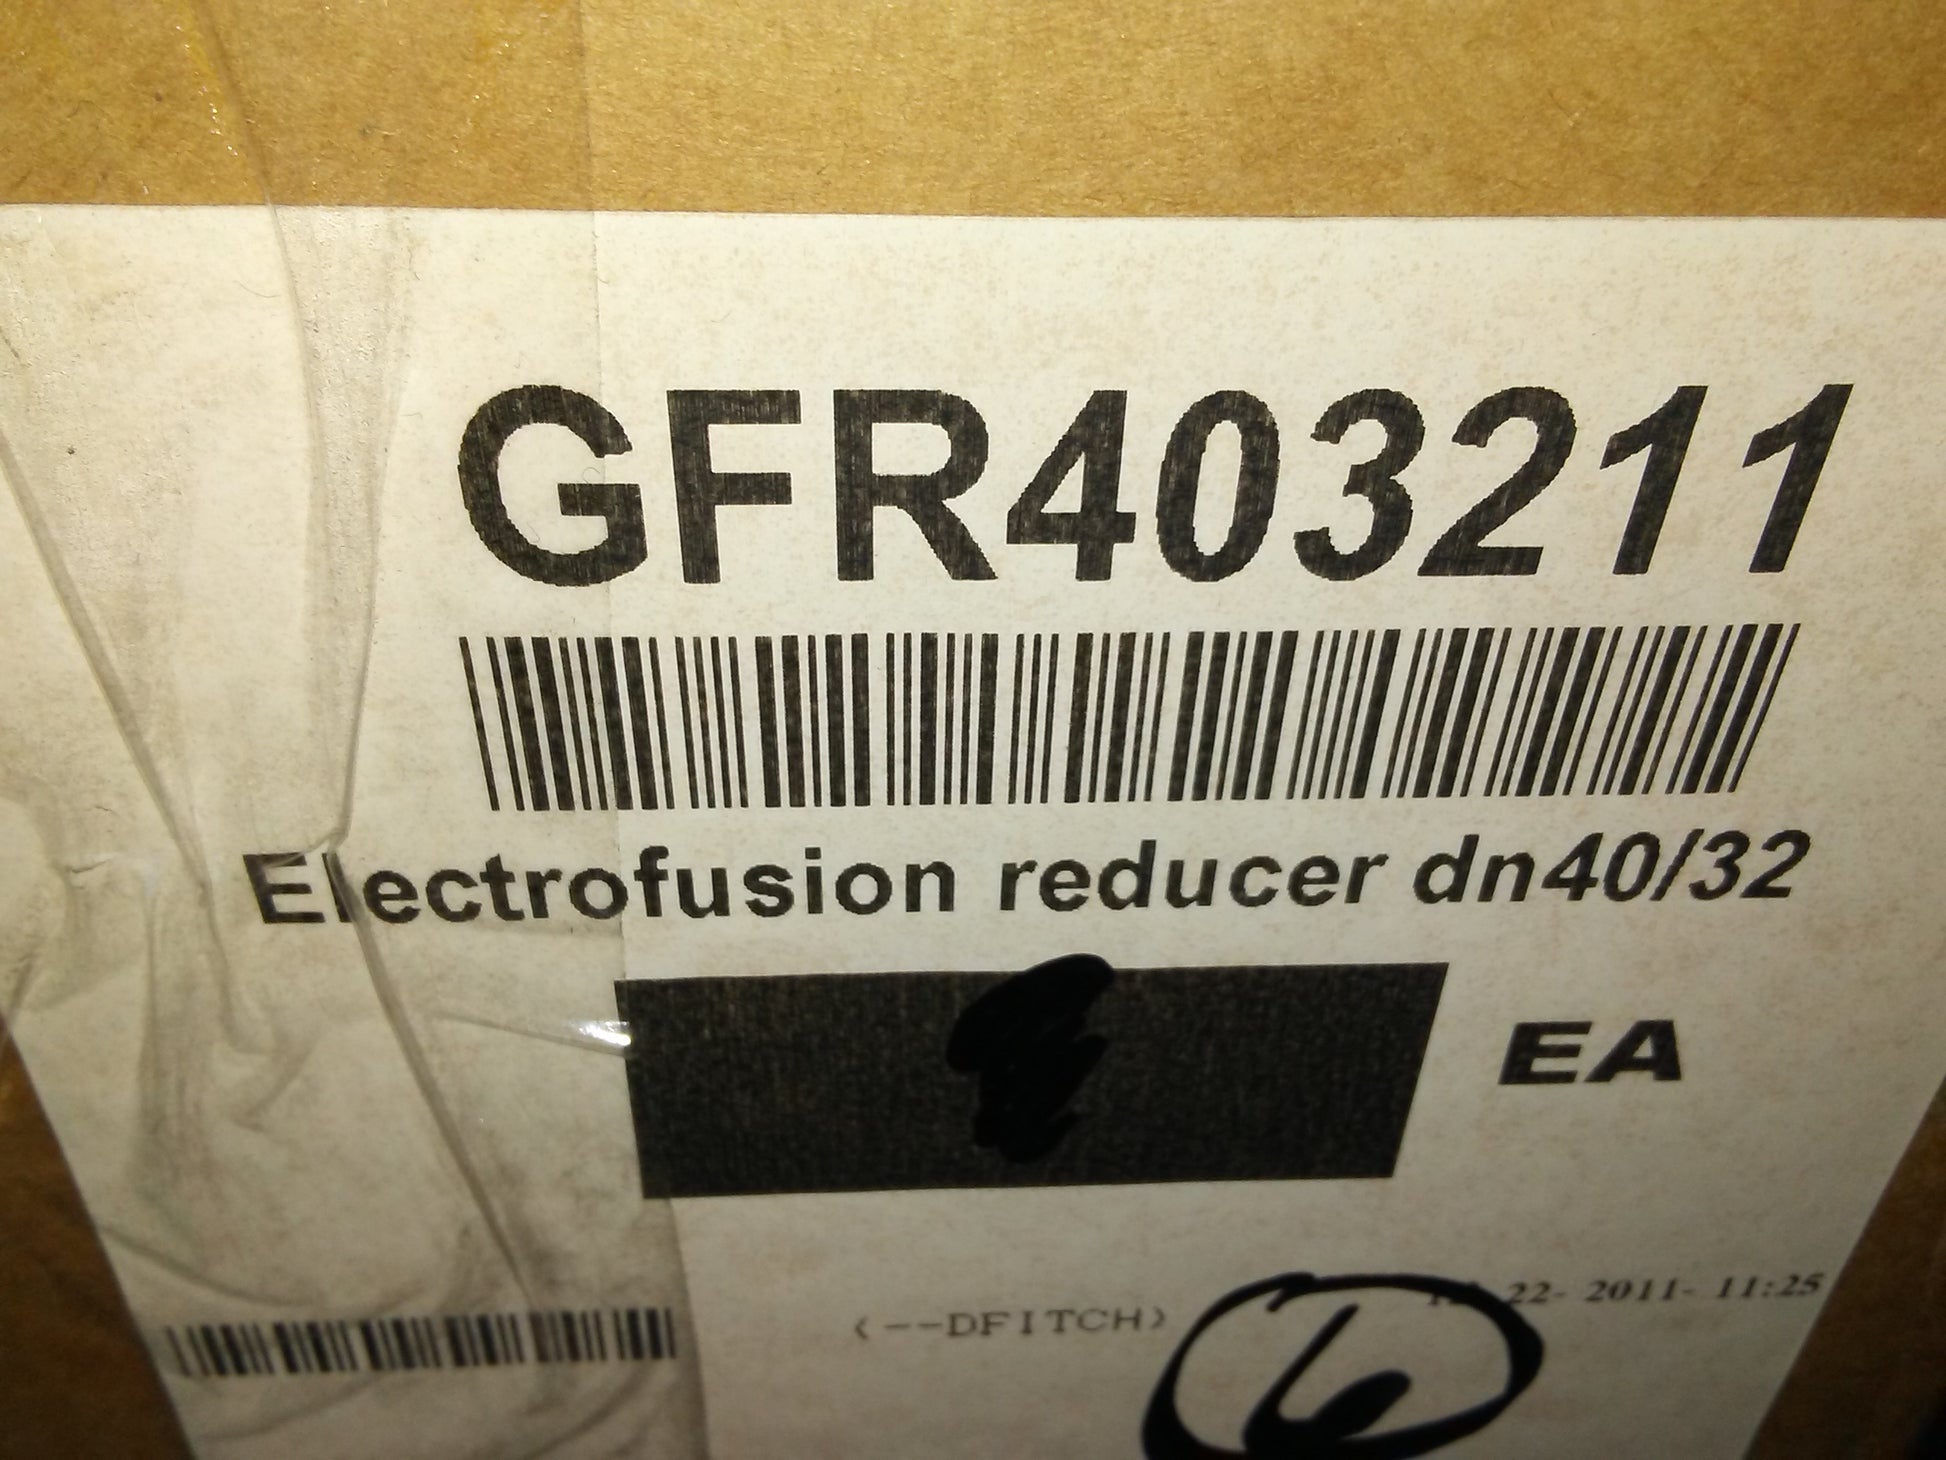 ELECTROFUSION REDUCER DN40/32